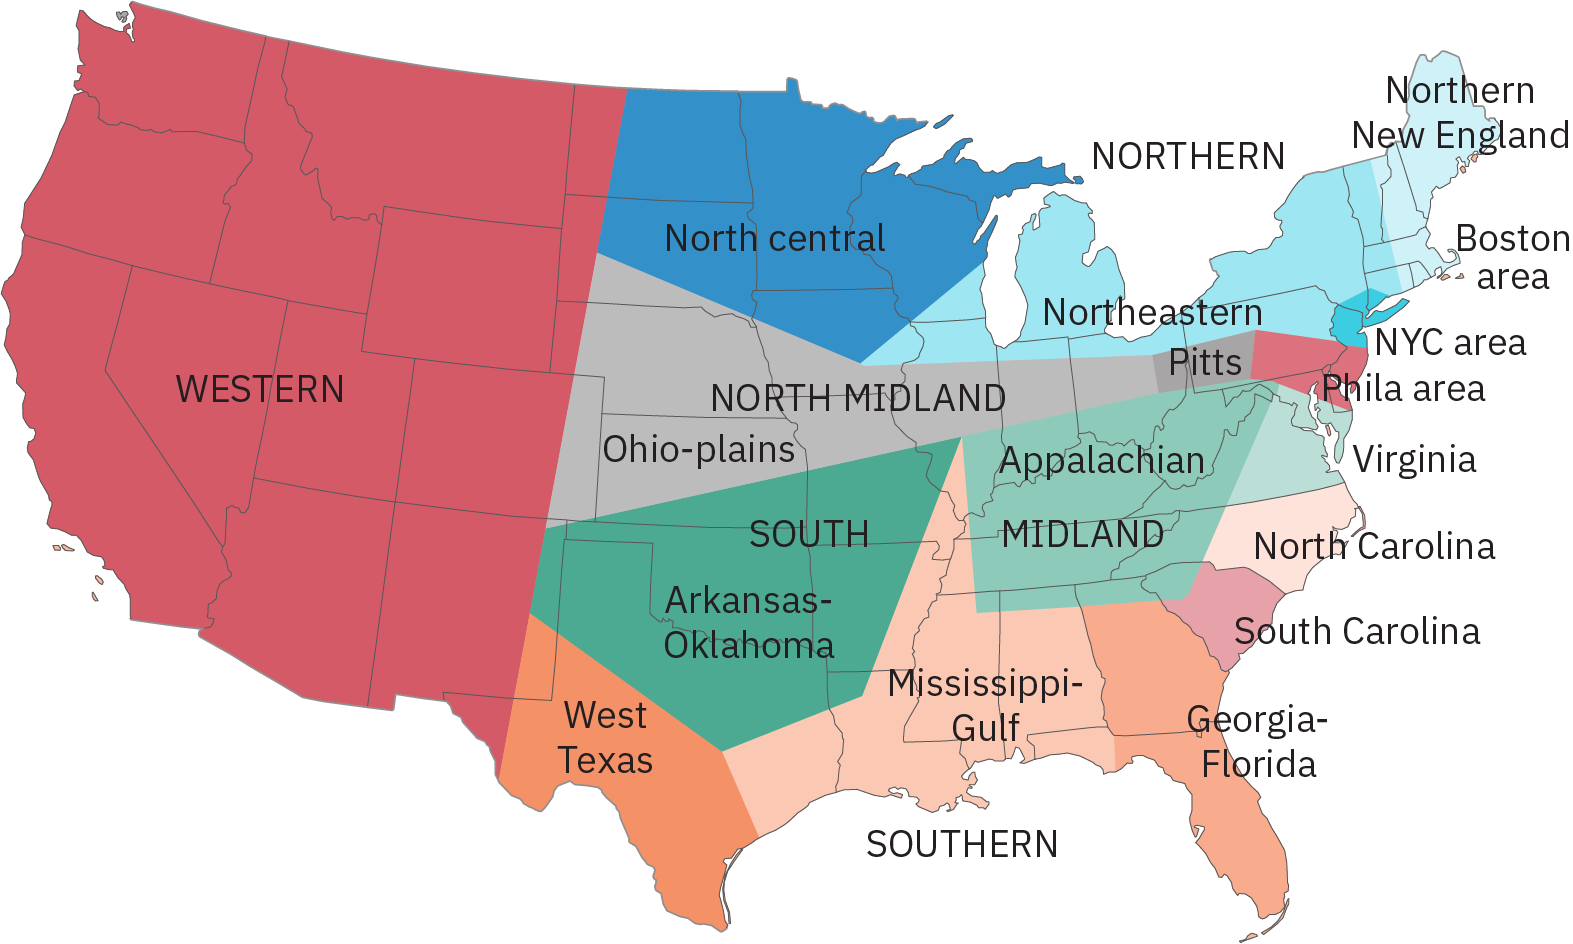 用语音方言勾勒出各个区域的轮廓、阴影和标记。 例子包括：“北方”，包括整个新英格兰、密歇根州、纽约州以及宾夕法尼亚州和俄亥俄州的部分地区；“乔治亚-佛罗里达”，包括整个佛罗里达州和几乎整个佐治亚州；以及 “西部”，从一条大致从新墨西哥州寄宿生开始的线路延伸到西海岸得克萨斯州，向北延伸。